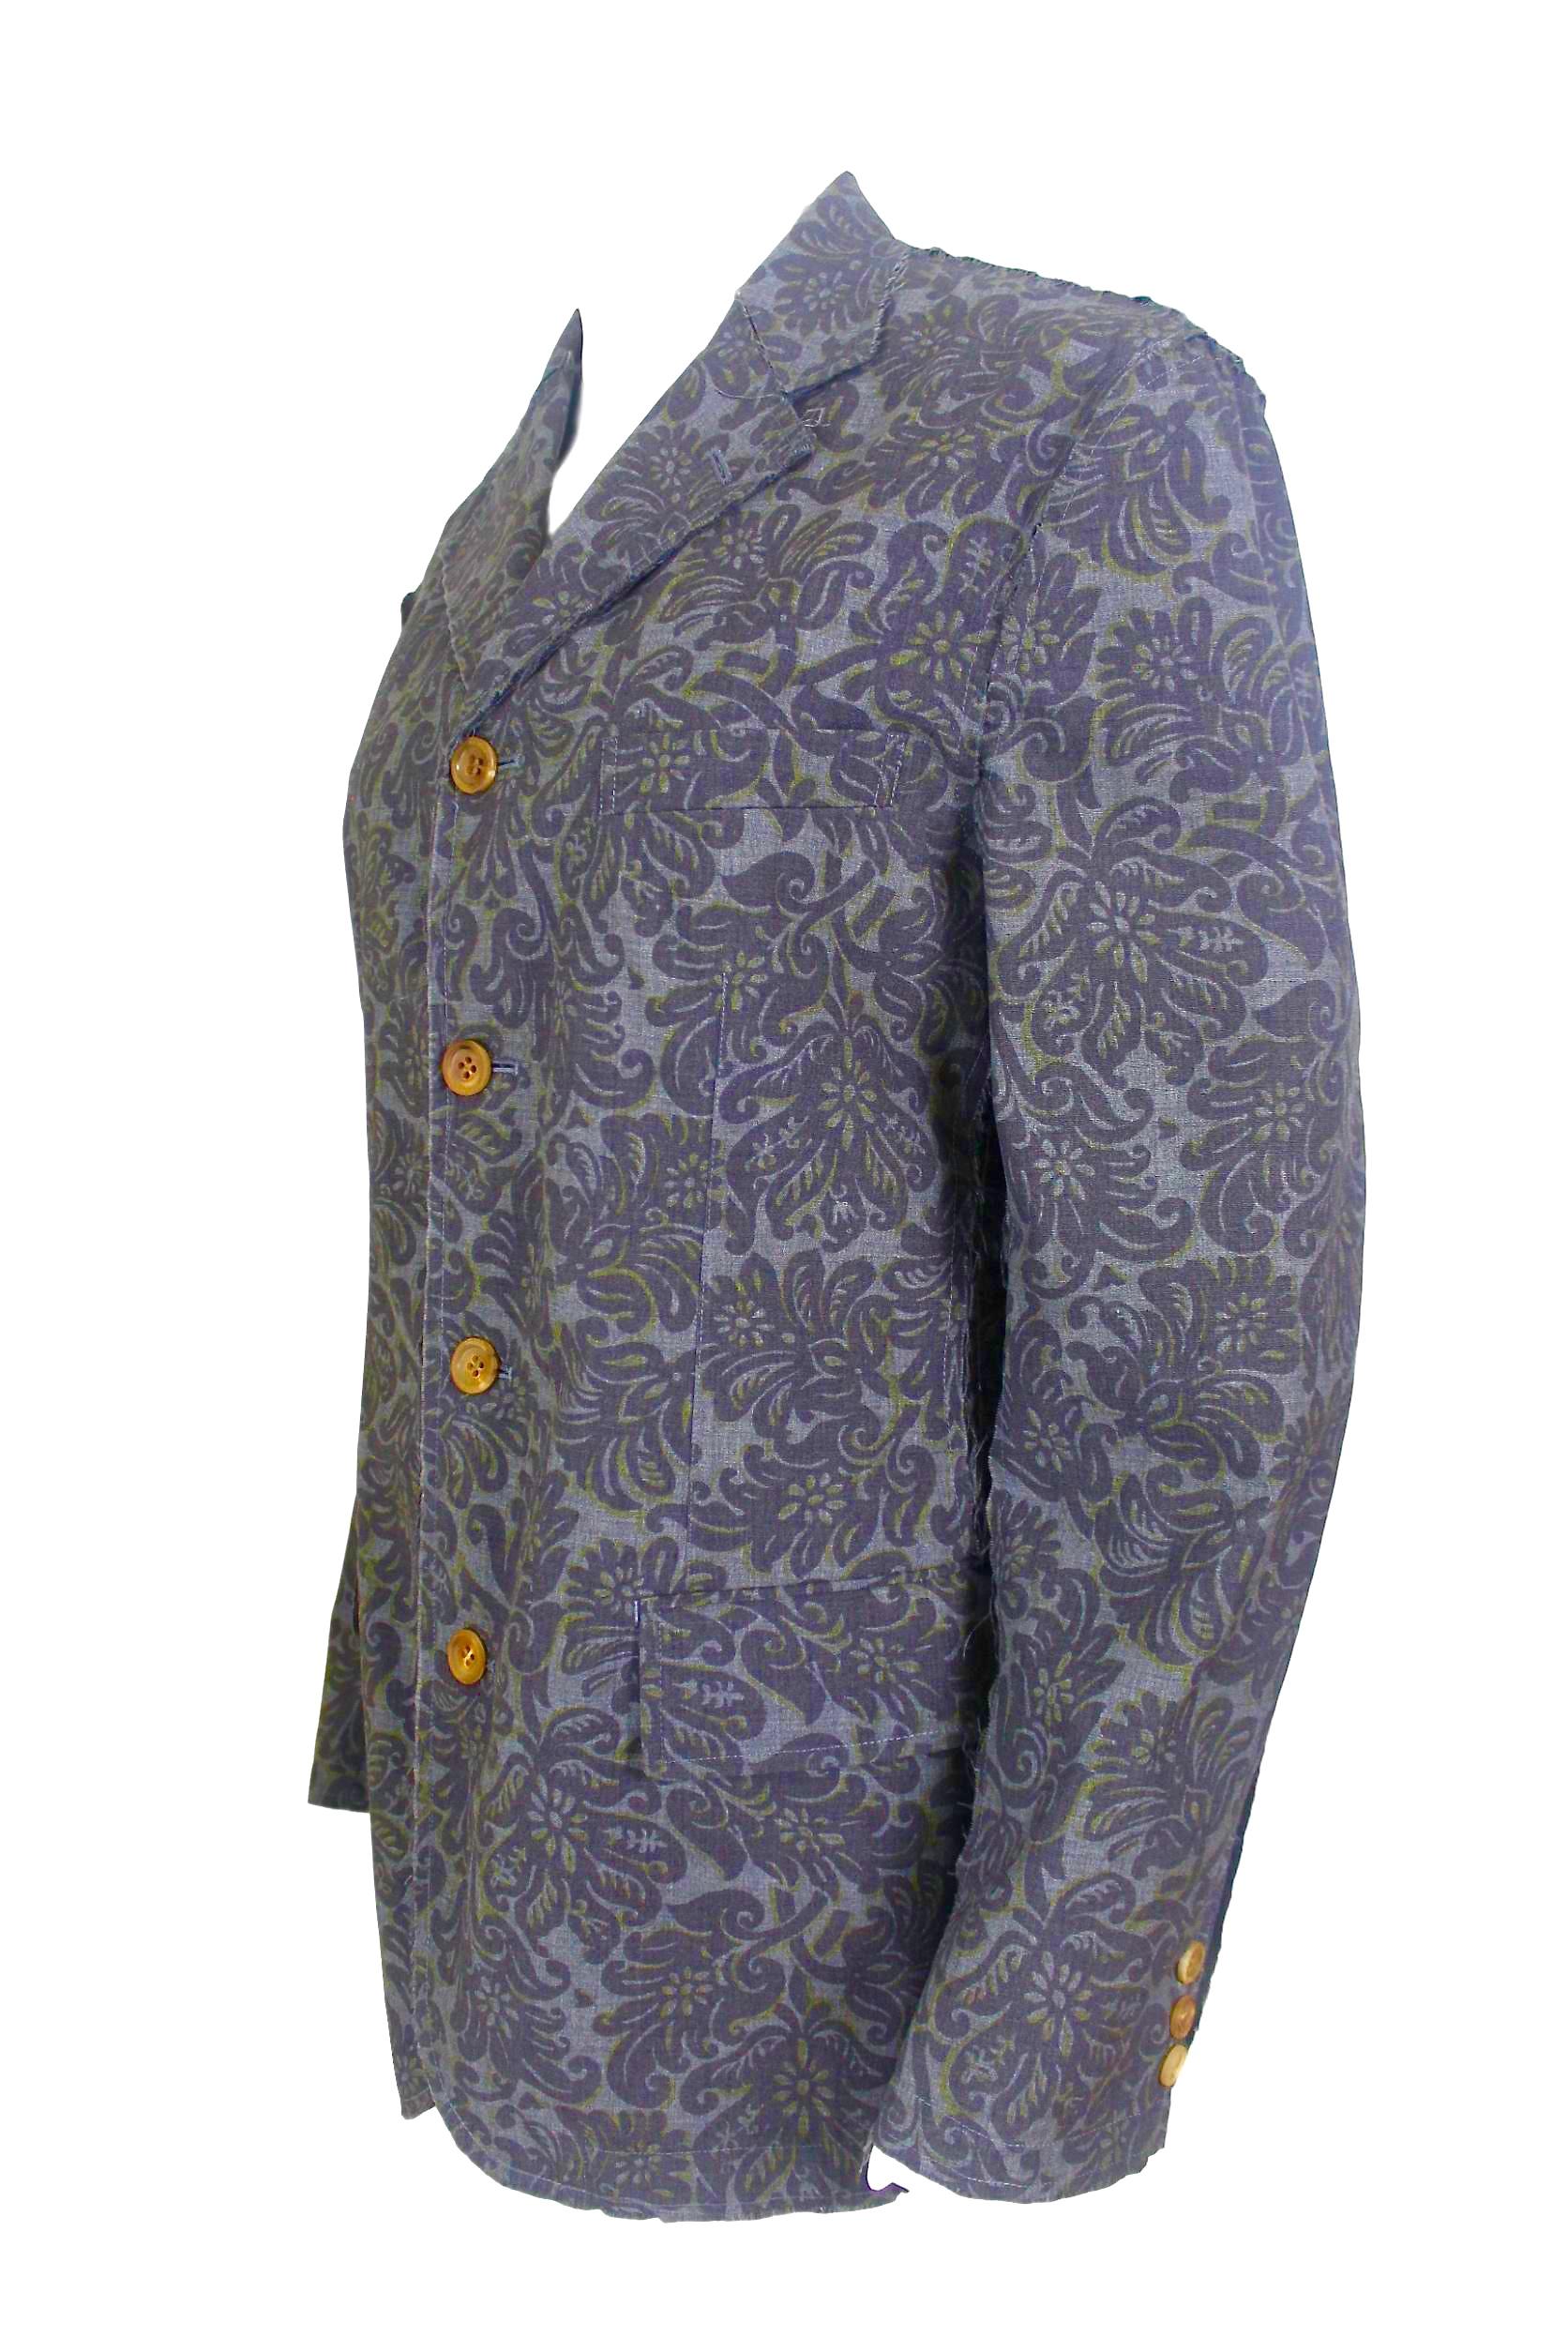 Comme des Garçons 2003 Homme Split Seam Jacket For Sale 8